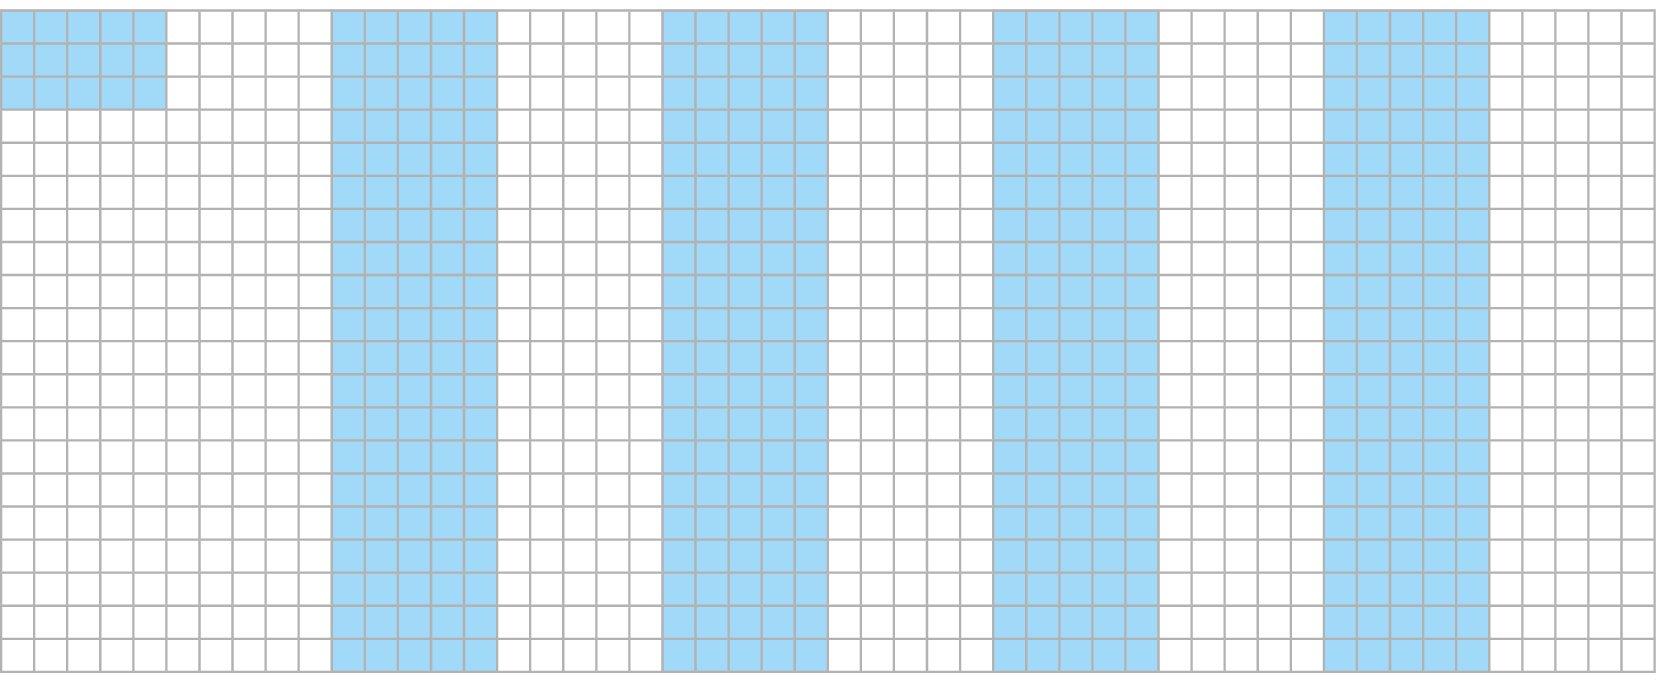 Ilustração. Malha quadriculada com 20 fileiras de 50 quadradinhos cada, formando nesta malha 1000 quadradinhos. Nela estão pintados  de azul 4 faixas de 20 fileiras de 5 quadradinhos em cada. e mais 3 fileiras com 5 quadradinhos cada.